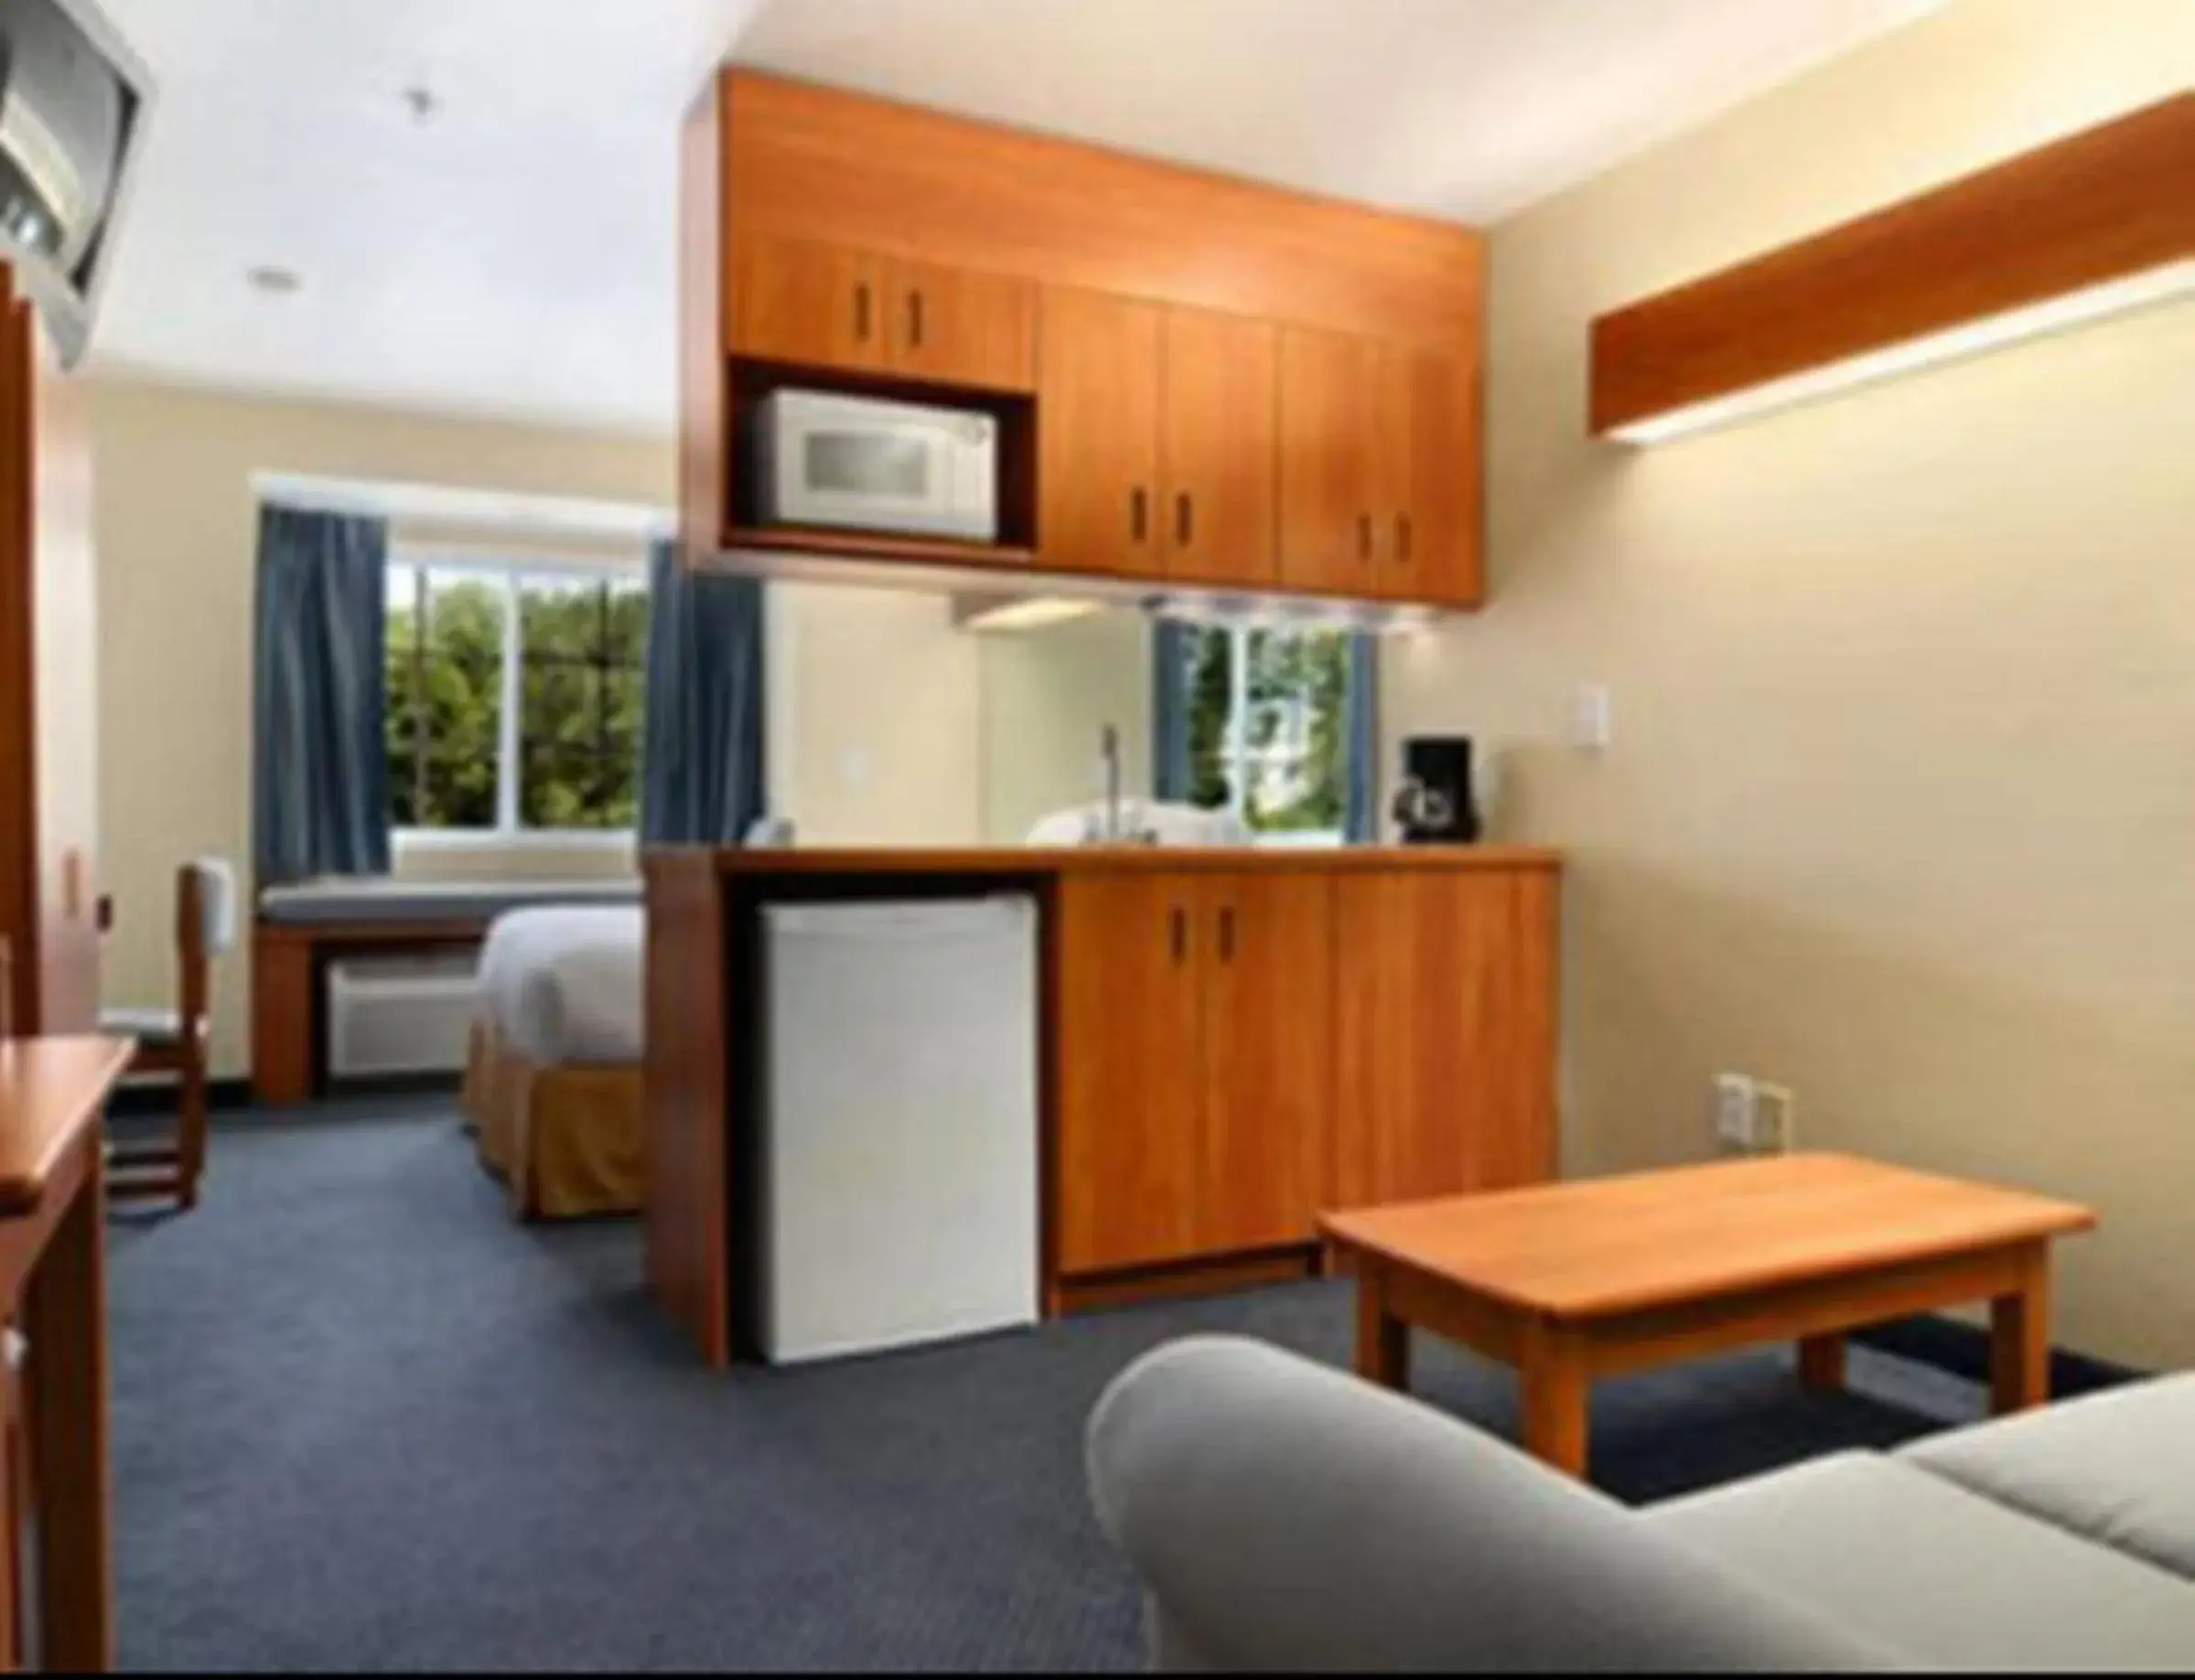 Bedroom in Microtel Inn & Suites Huntsville